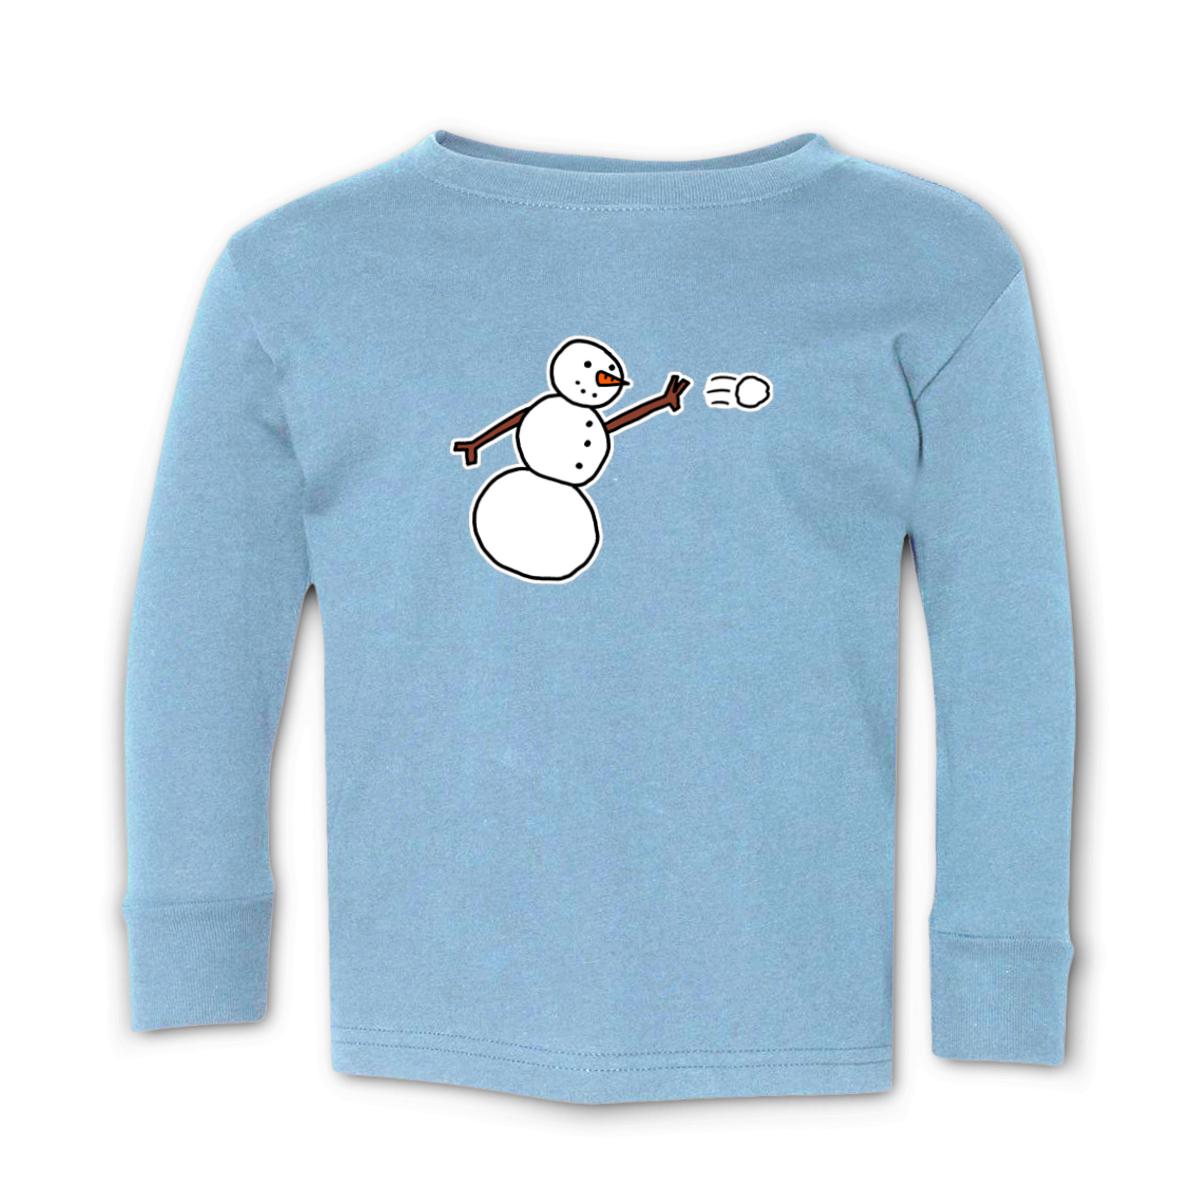 Snowman Throwing Snowball Toddler Long Sleeve Tee 56T light-blue